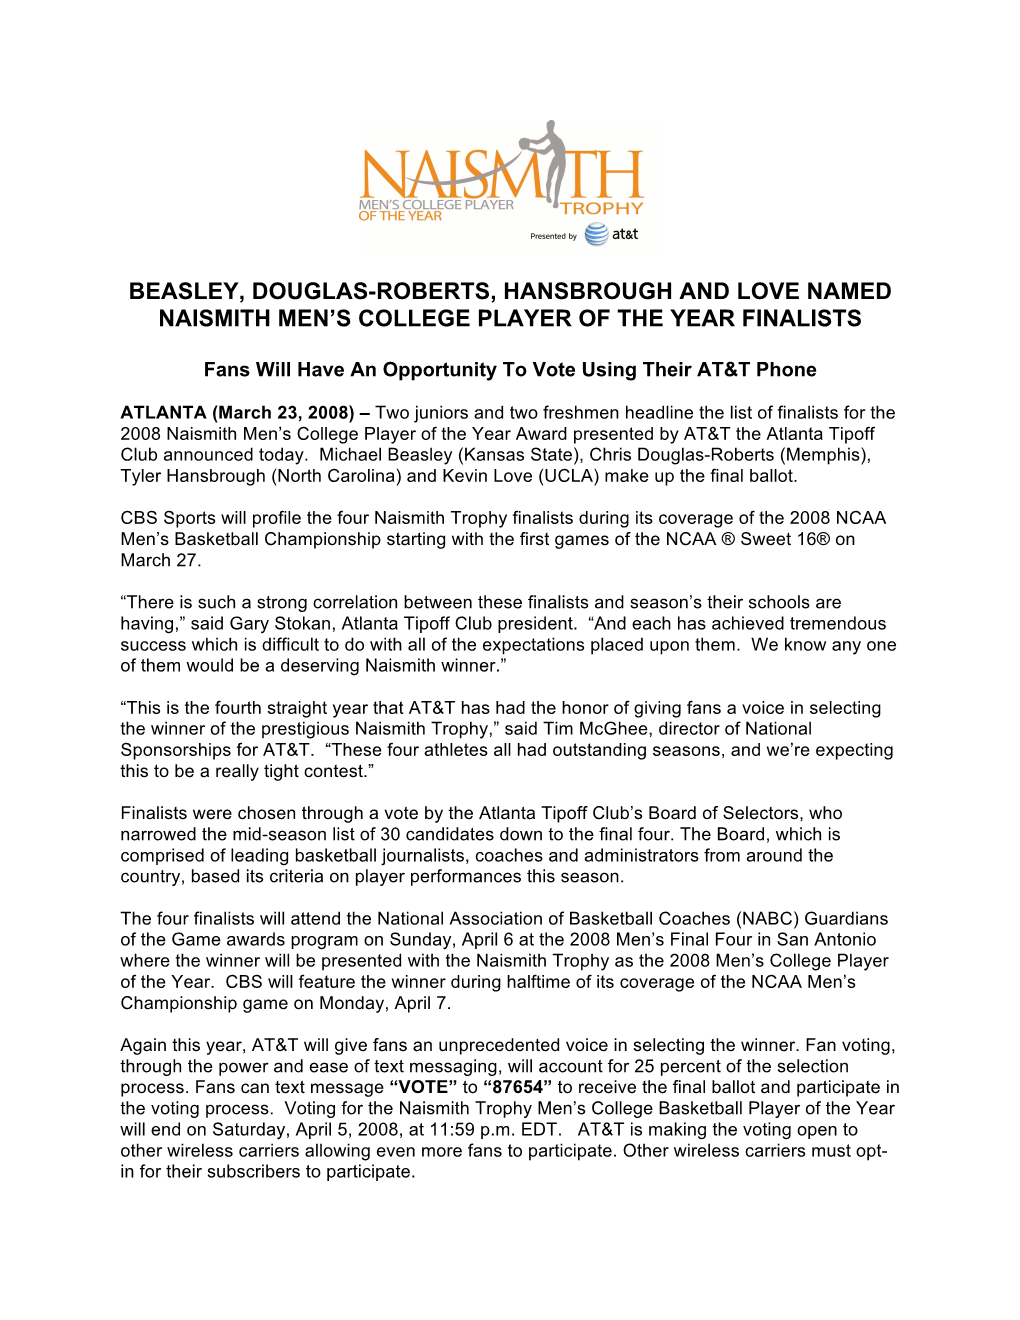 Beasley, Douglas-Roberts, Hansbrough and Love Named Naismith Men's